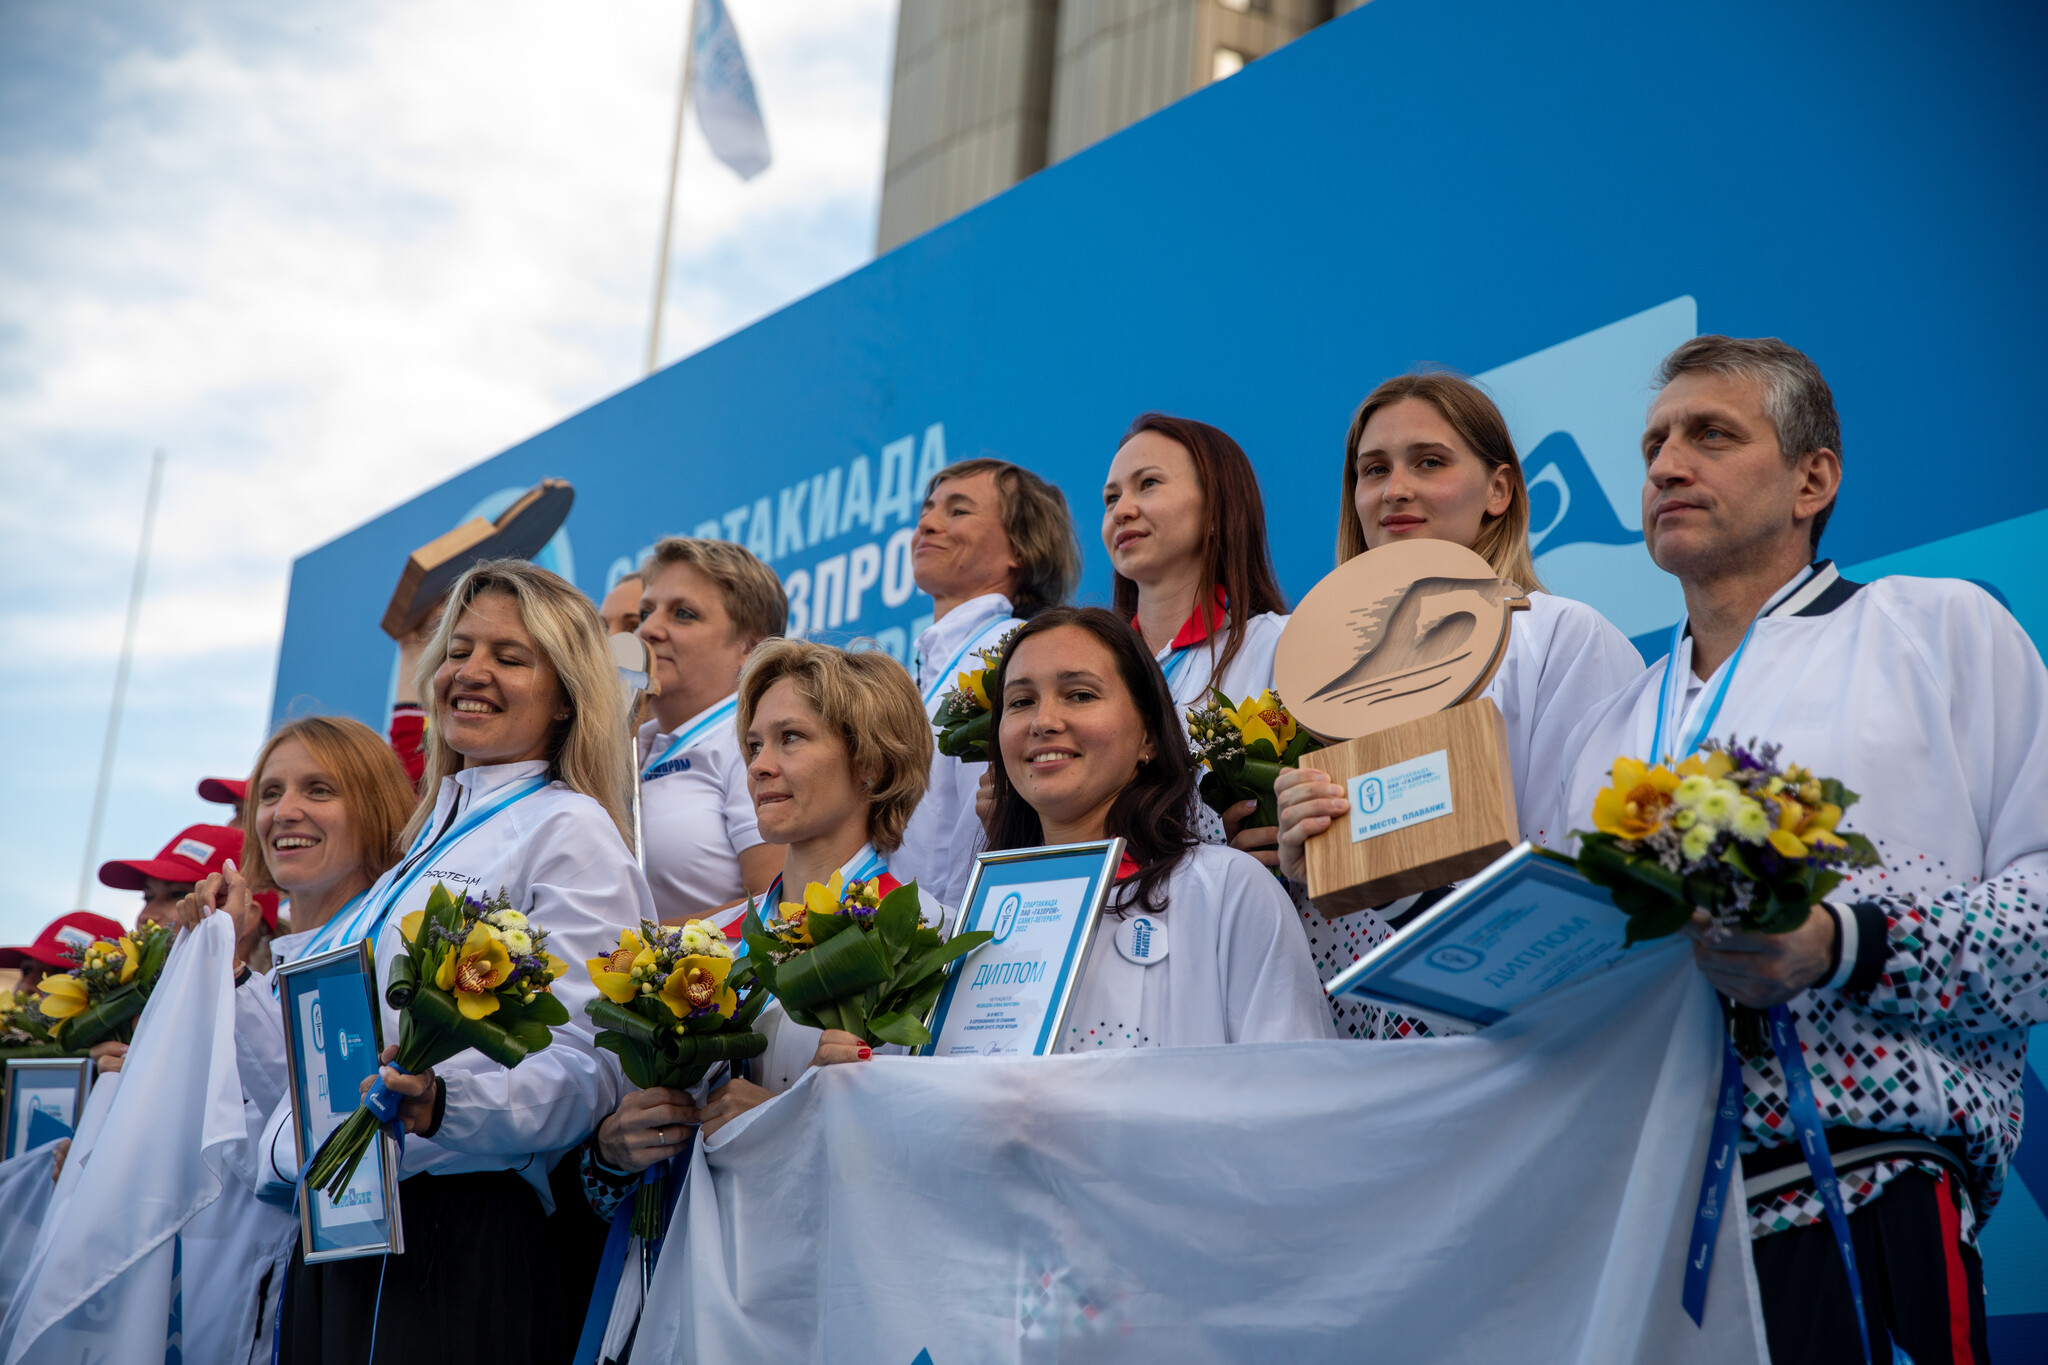 Спартакиада «Газпрома» в Санкт-Петербурге стала одной из самых масштабных и зрелищных за десятилетия корпоративного спортивного движения